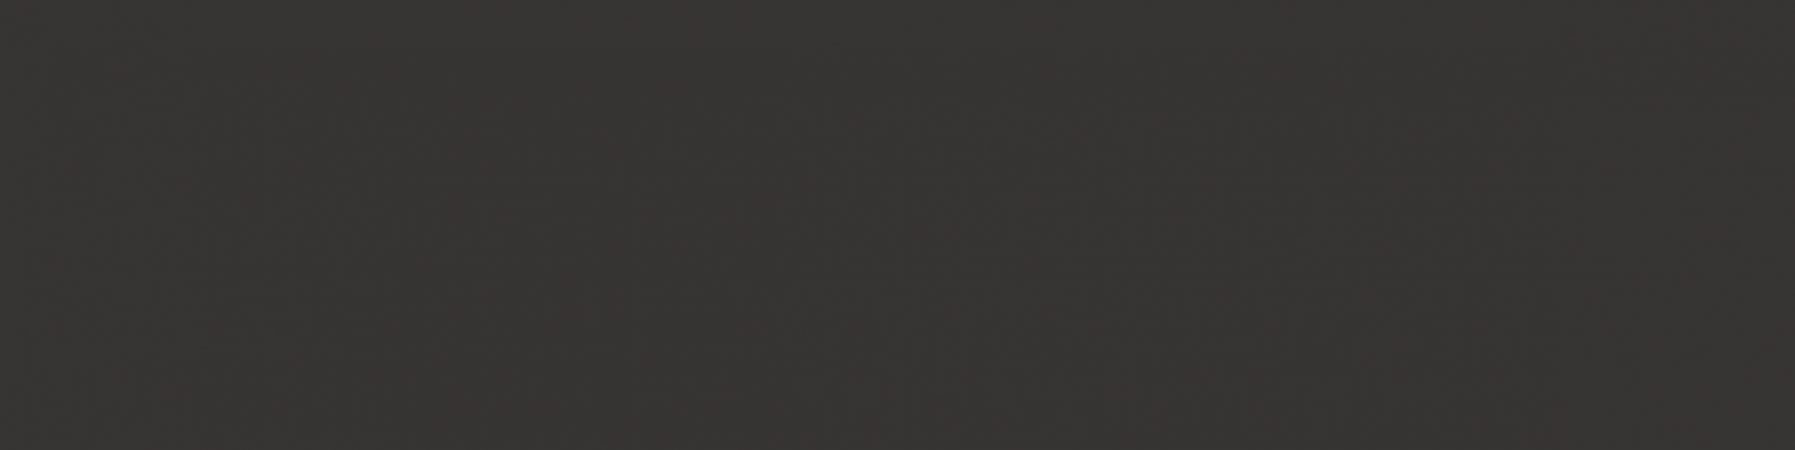 Керамическая плитка Wow Twin Peaks Liso Xl Nero 131618, цвет чёрный, поверхность матовая, под кирпич, 75x300